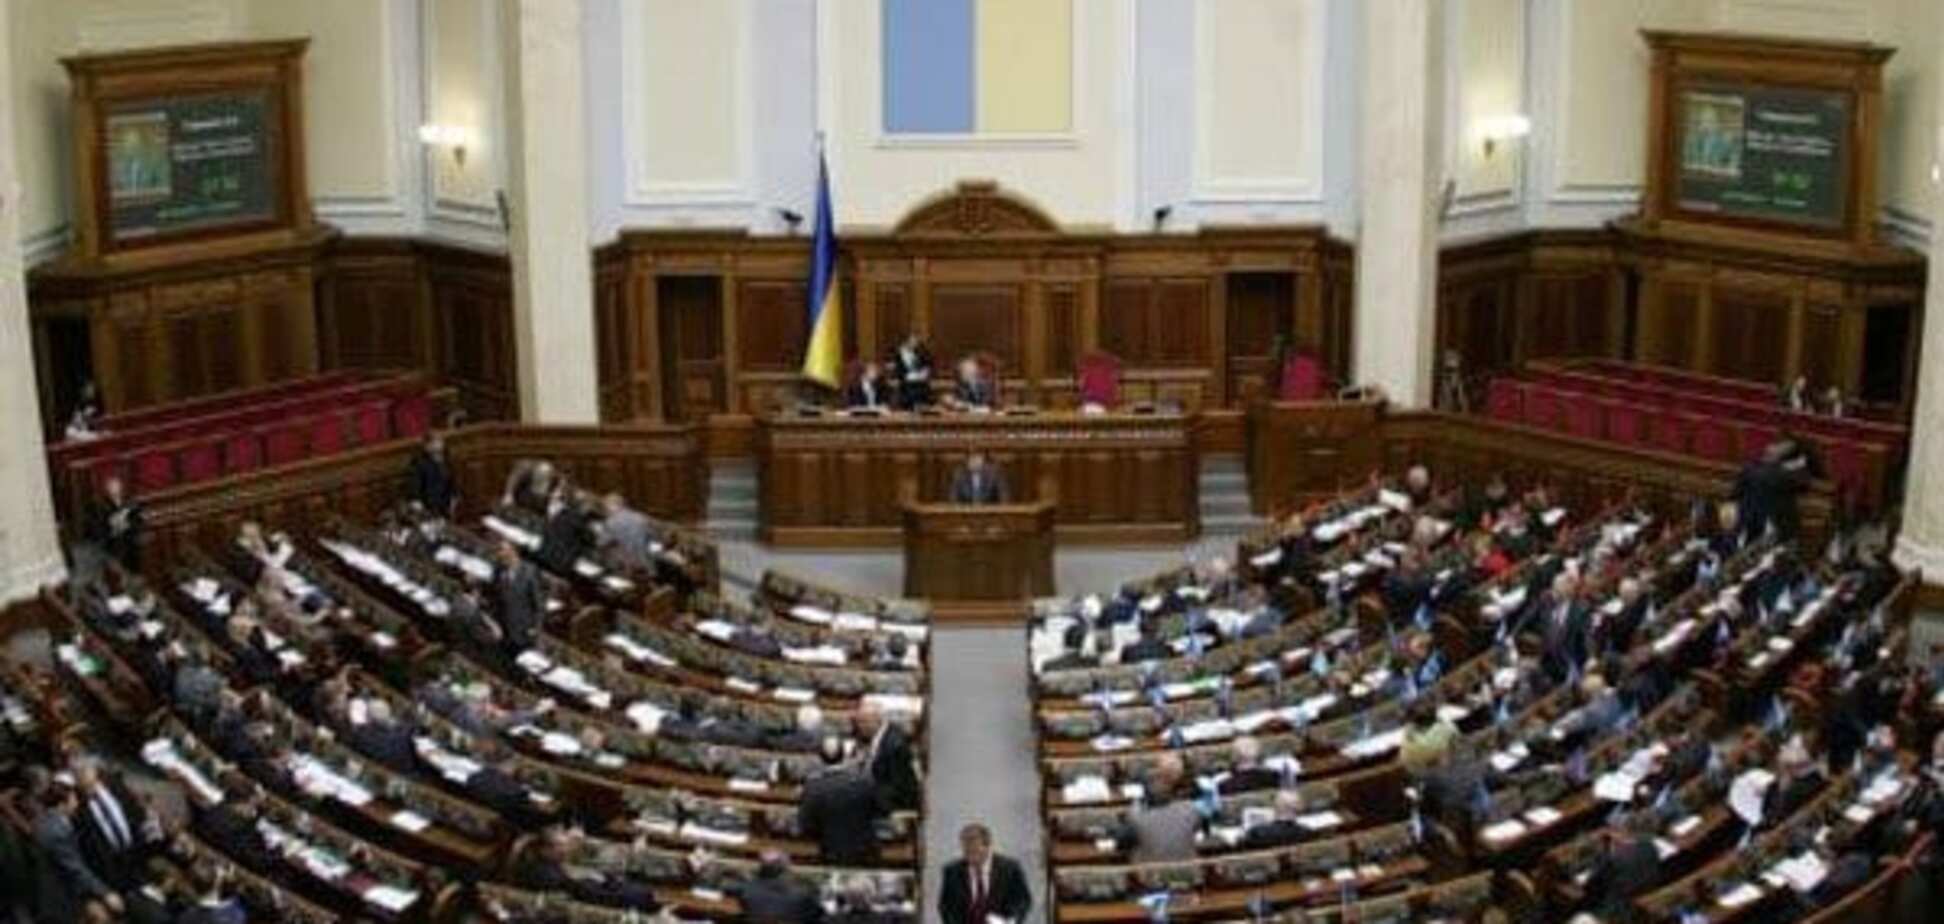 Янукович, вернись? В Раде готовятся принять два 'диктаторских' закона - эксперт